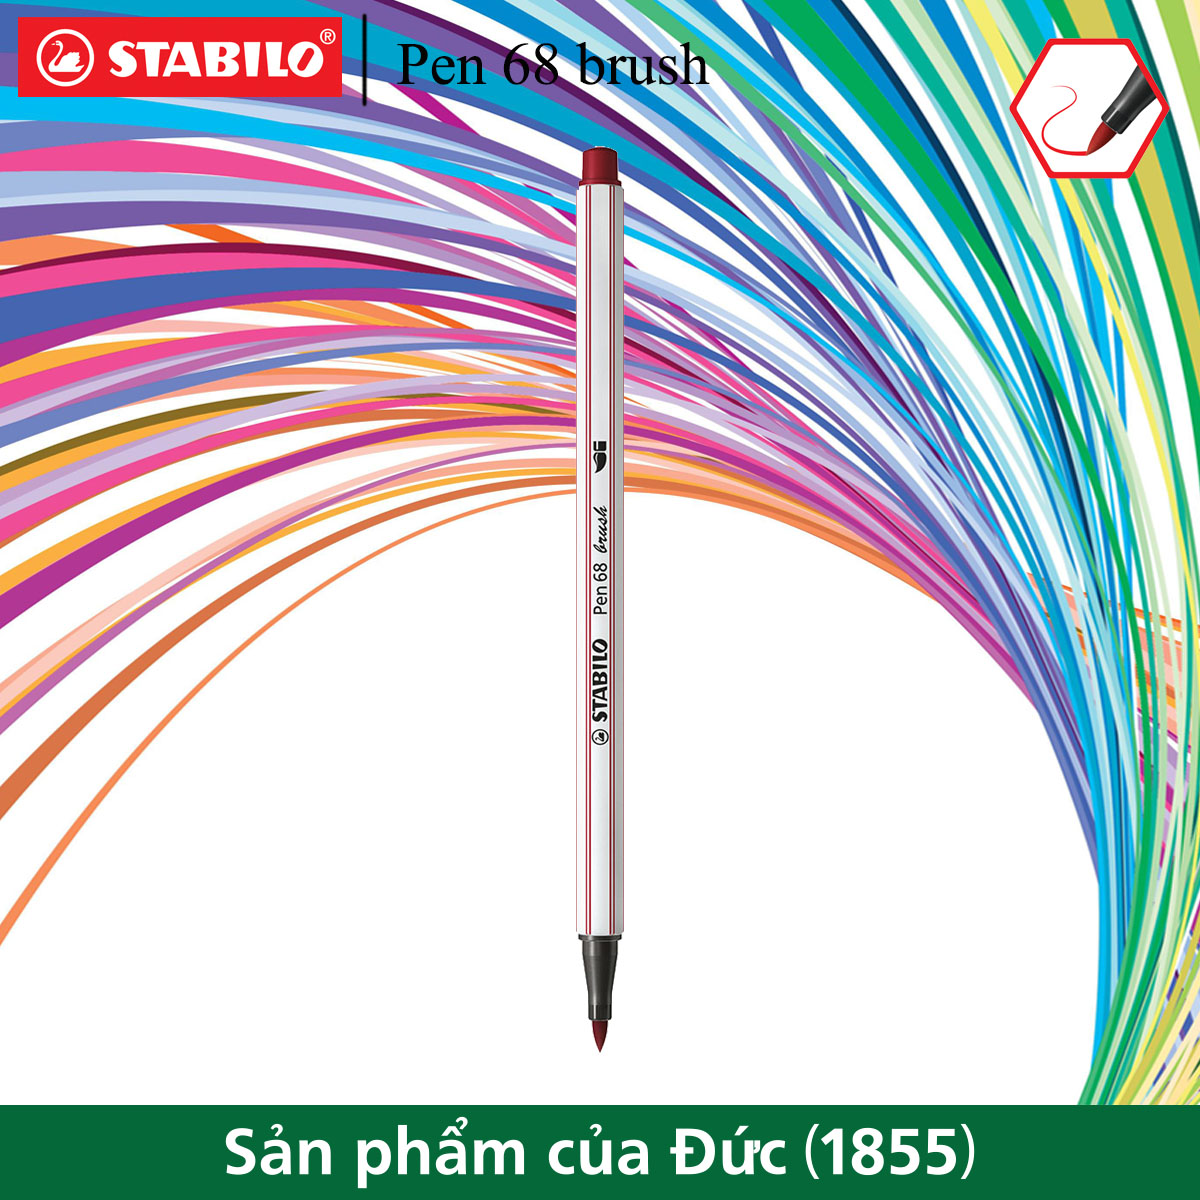 Bút lông màu STABILO Pen 68 brush PN68BR